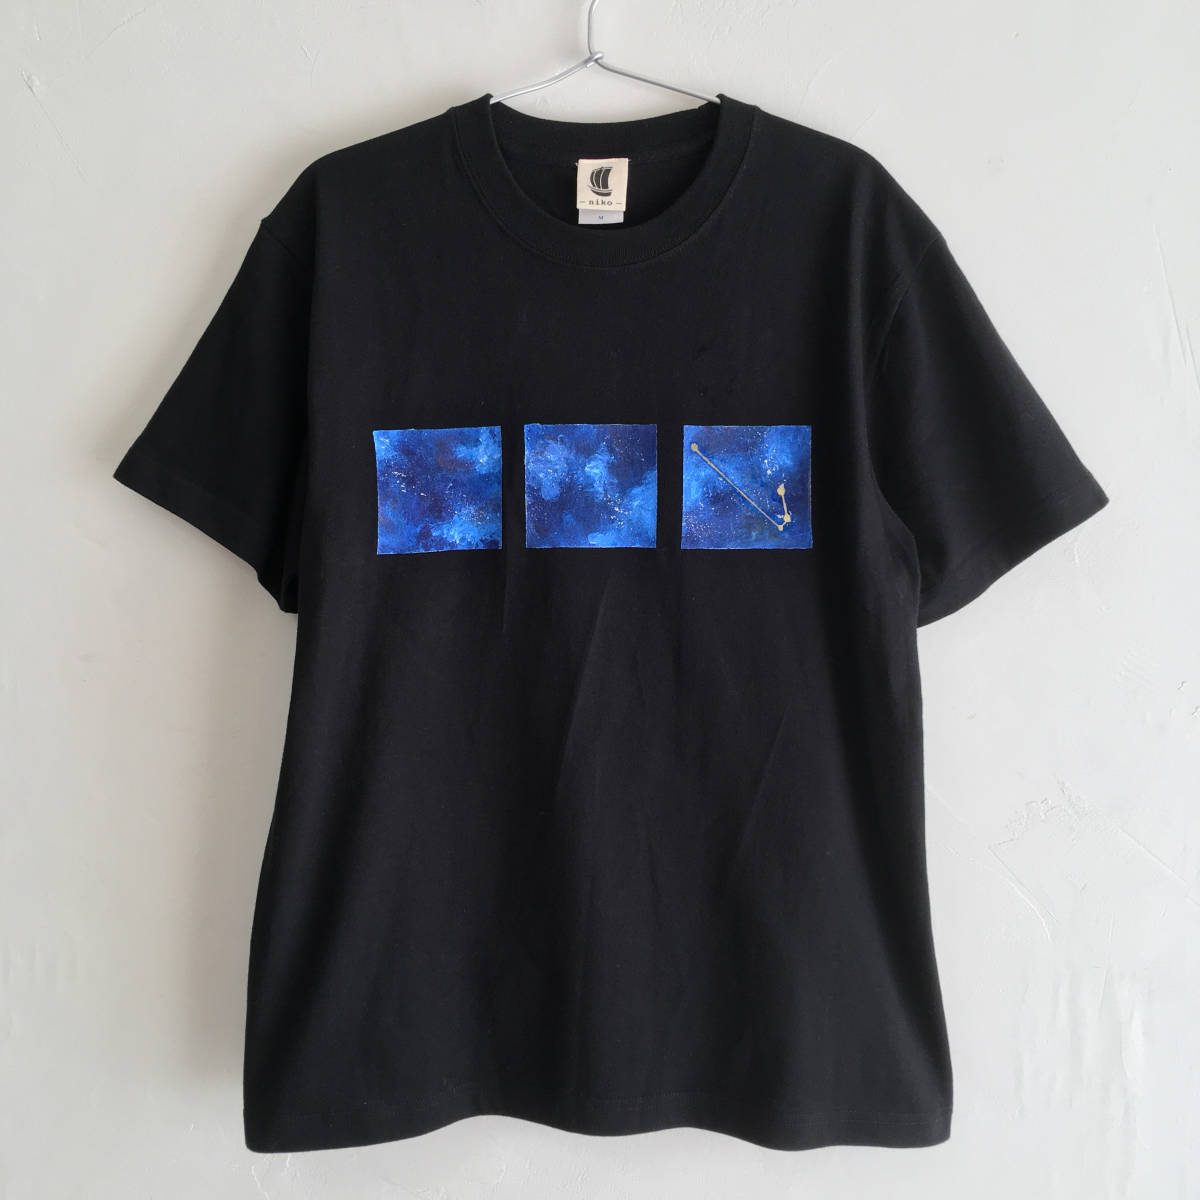 Handgezeichnetes T-Shirt mit Weltraummuster und 12 Sternbildern zur Auswahl, Schwarz, S-Größe, Galaxis, sternenklarer Himmel, S-Größe, Rundhals, gemustert